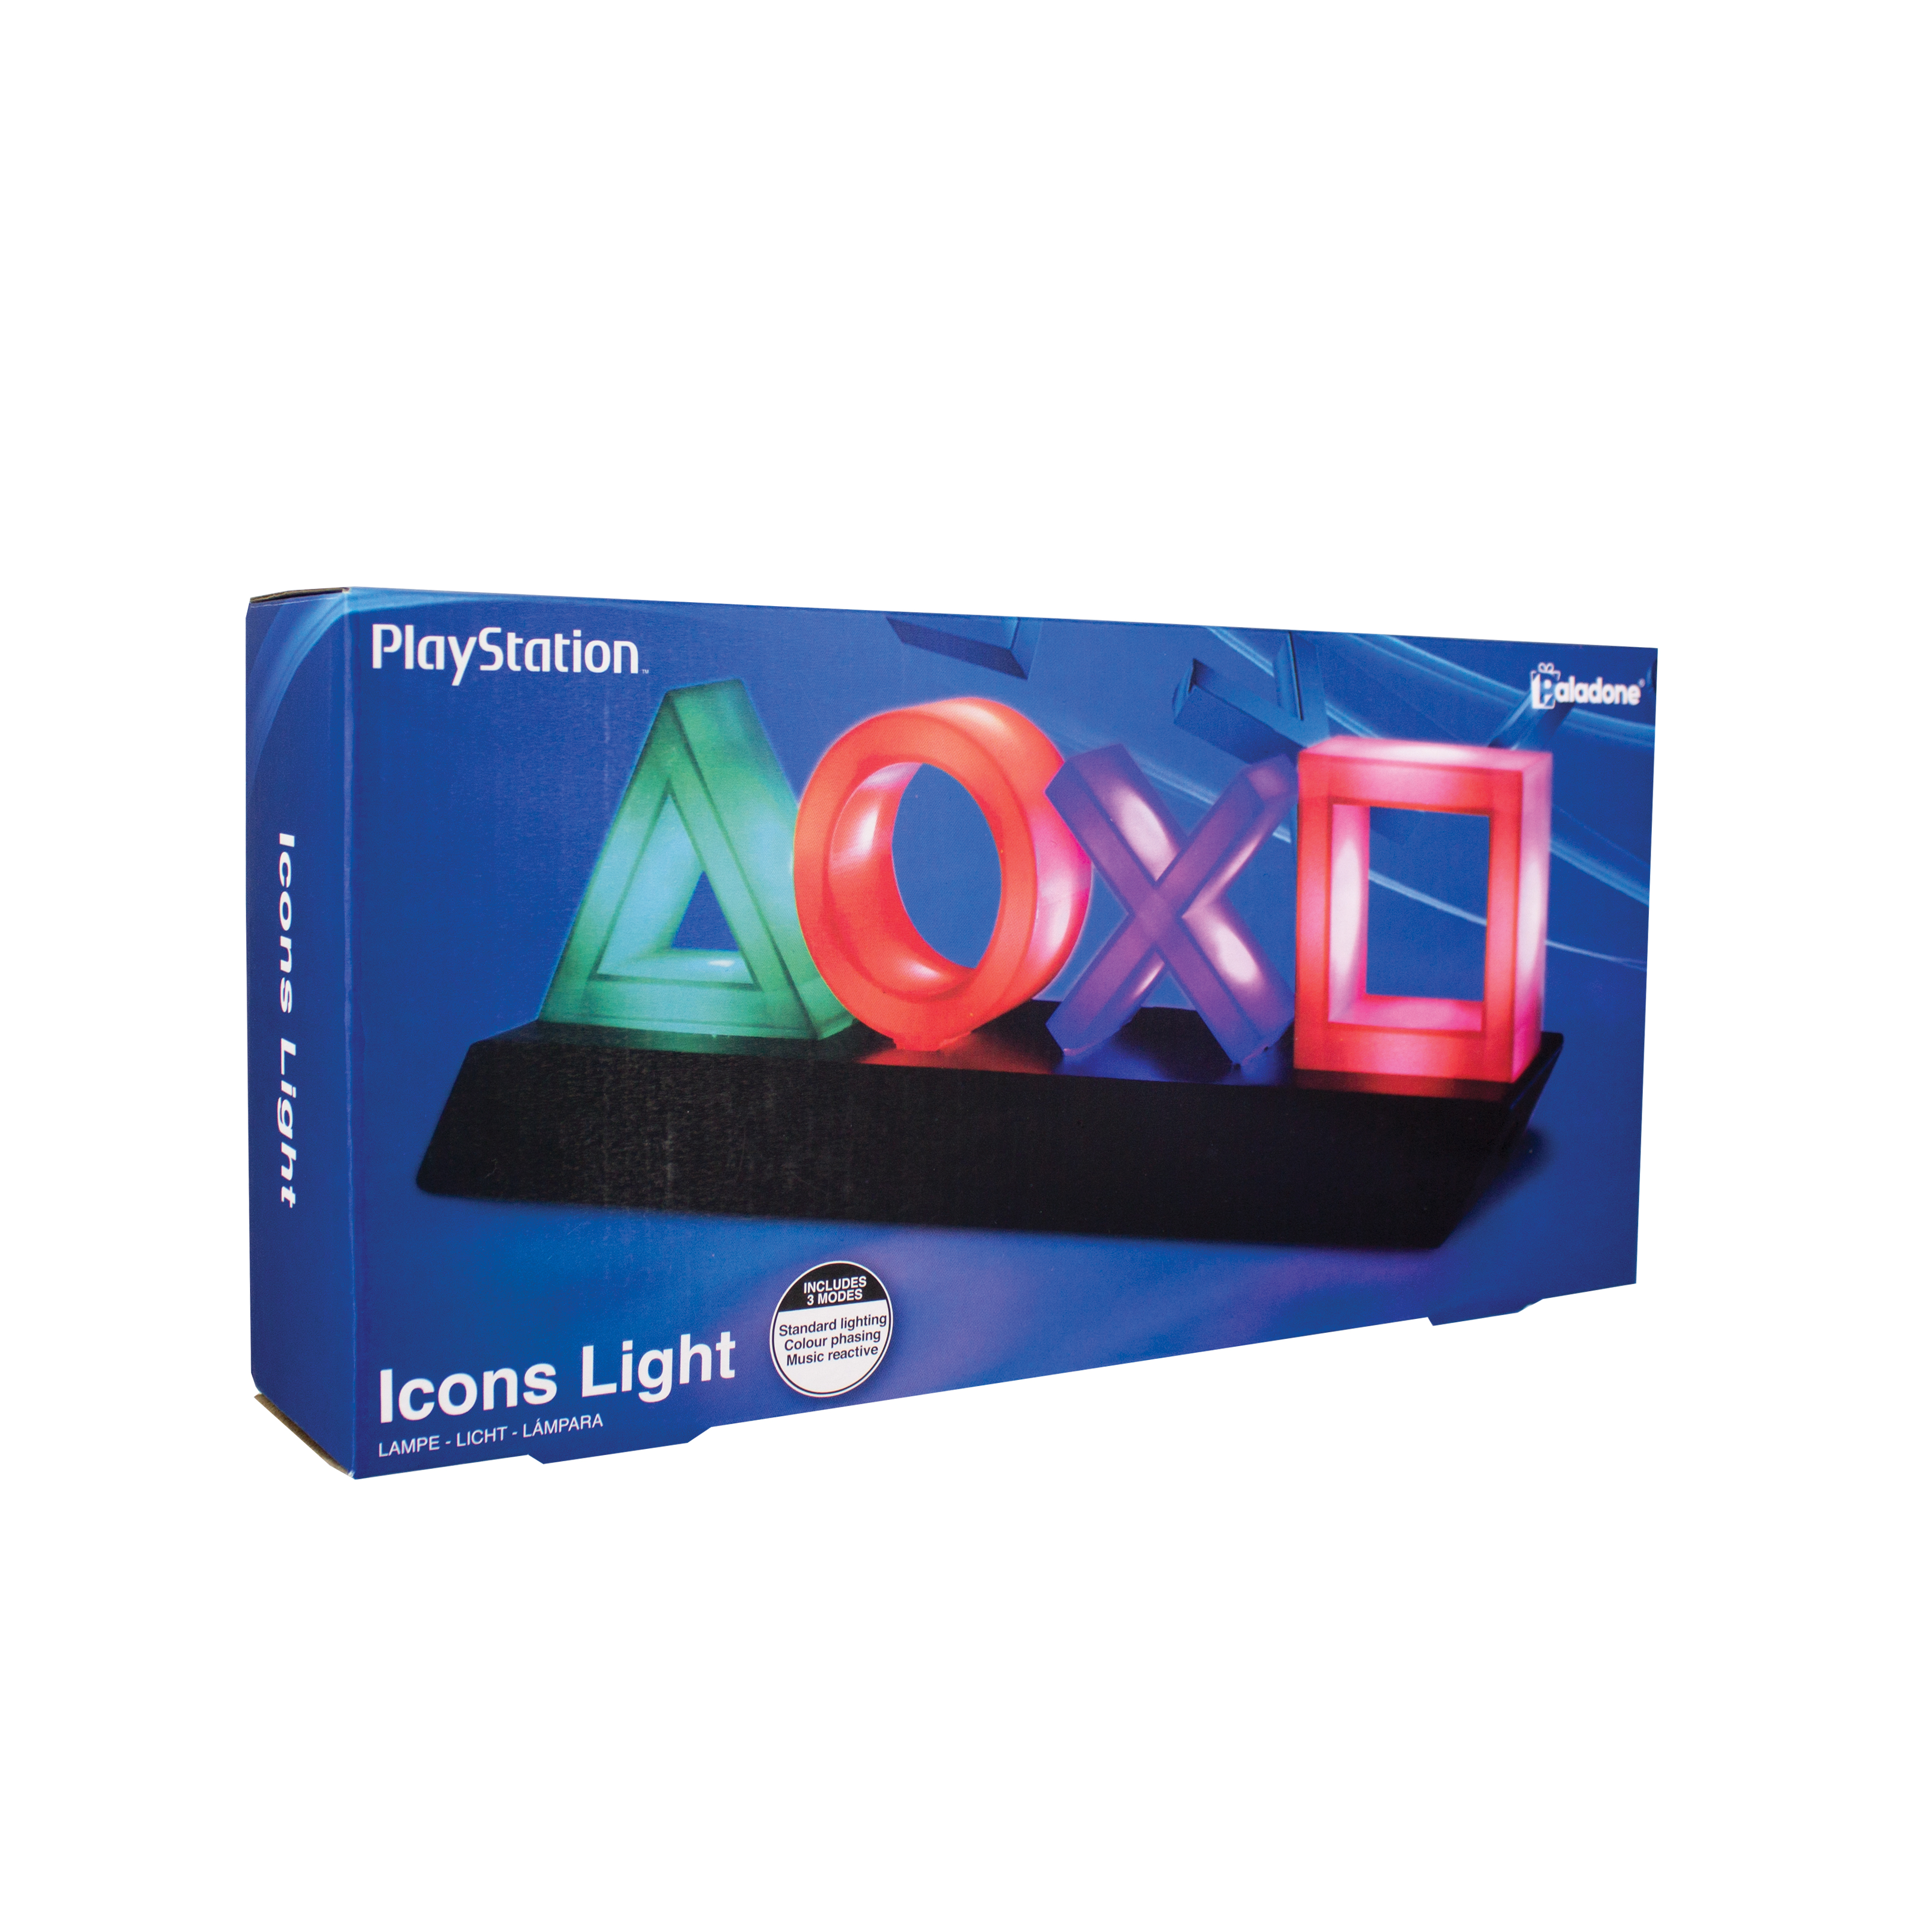 Playstation - Playstation Icons Light V2